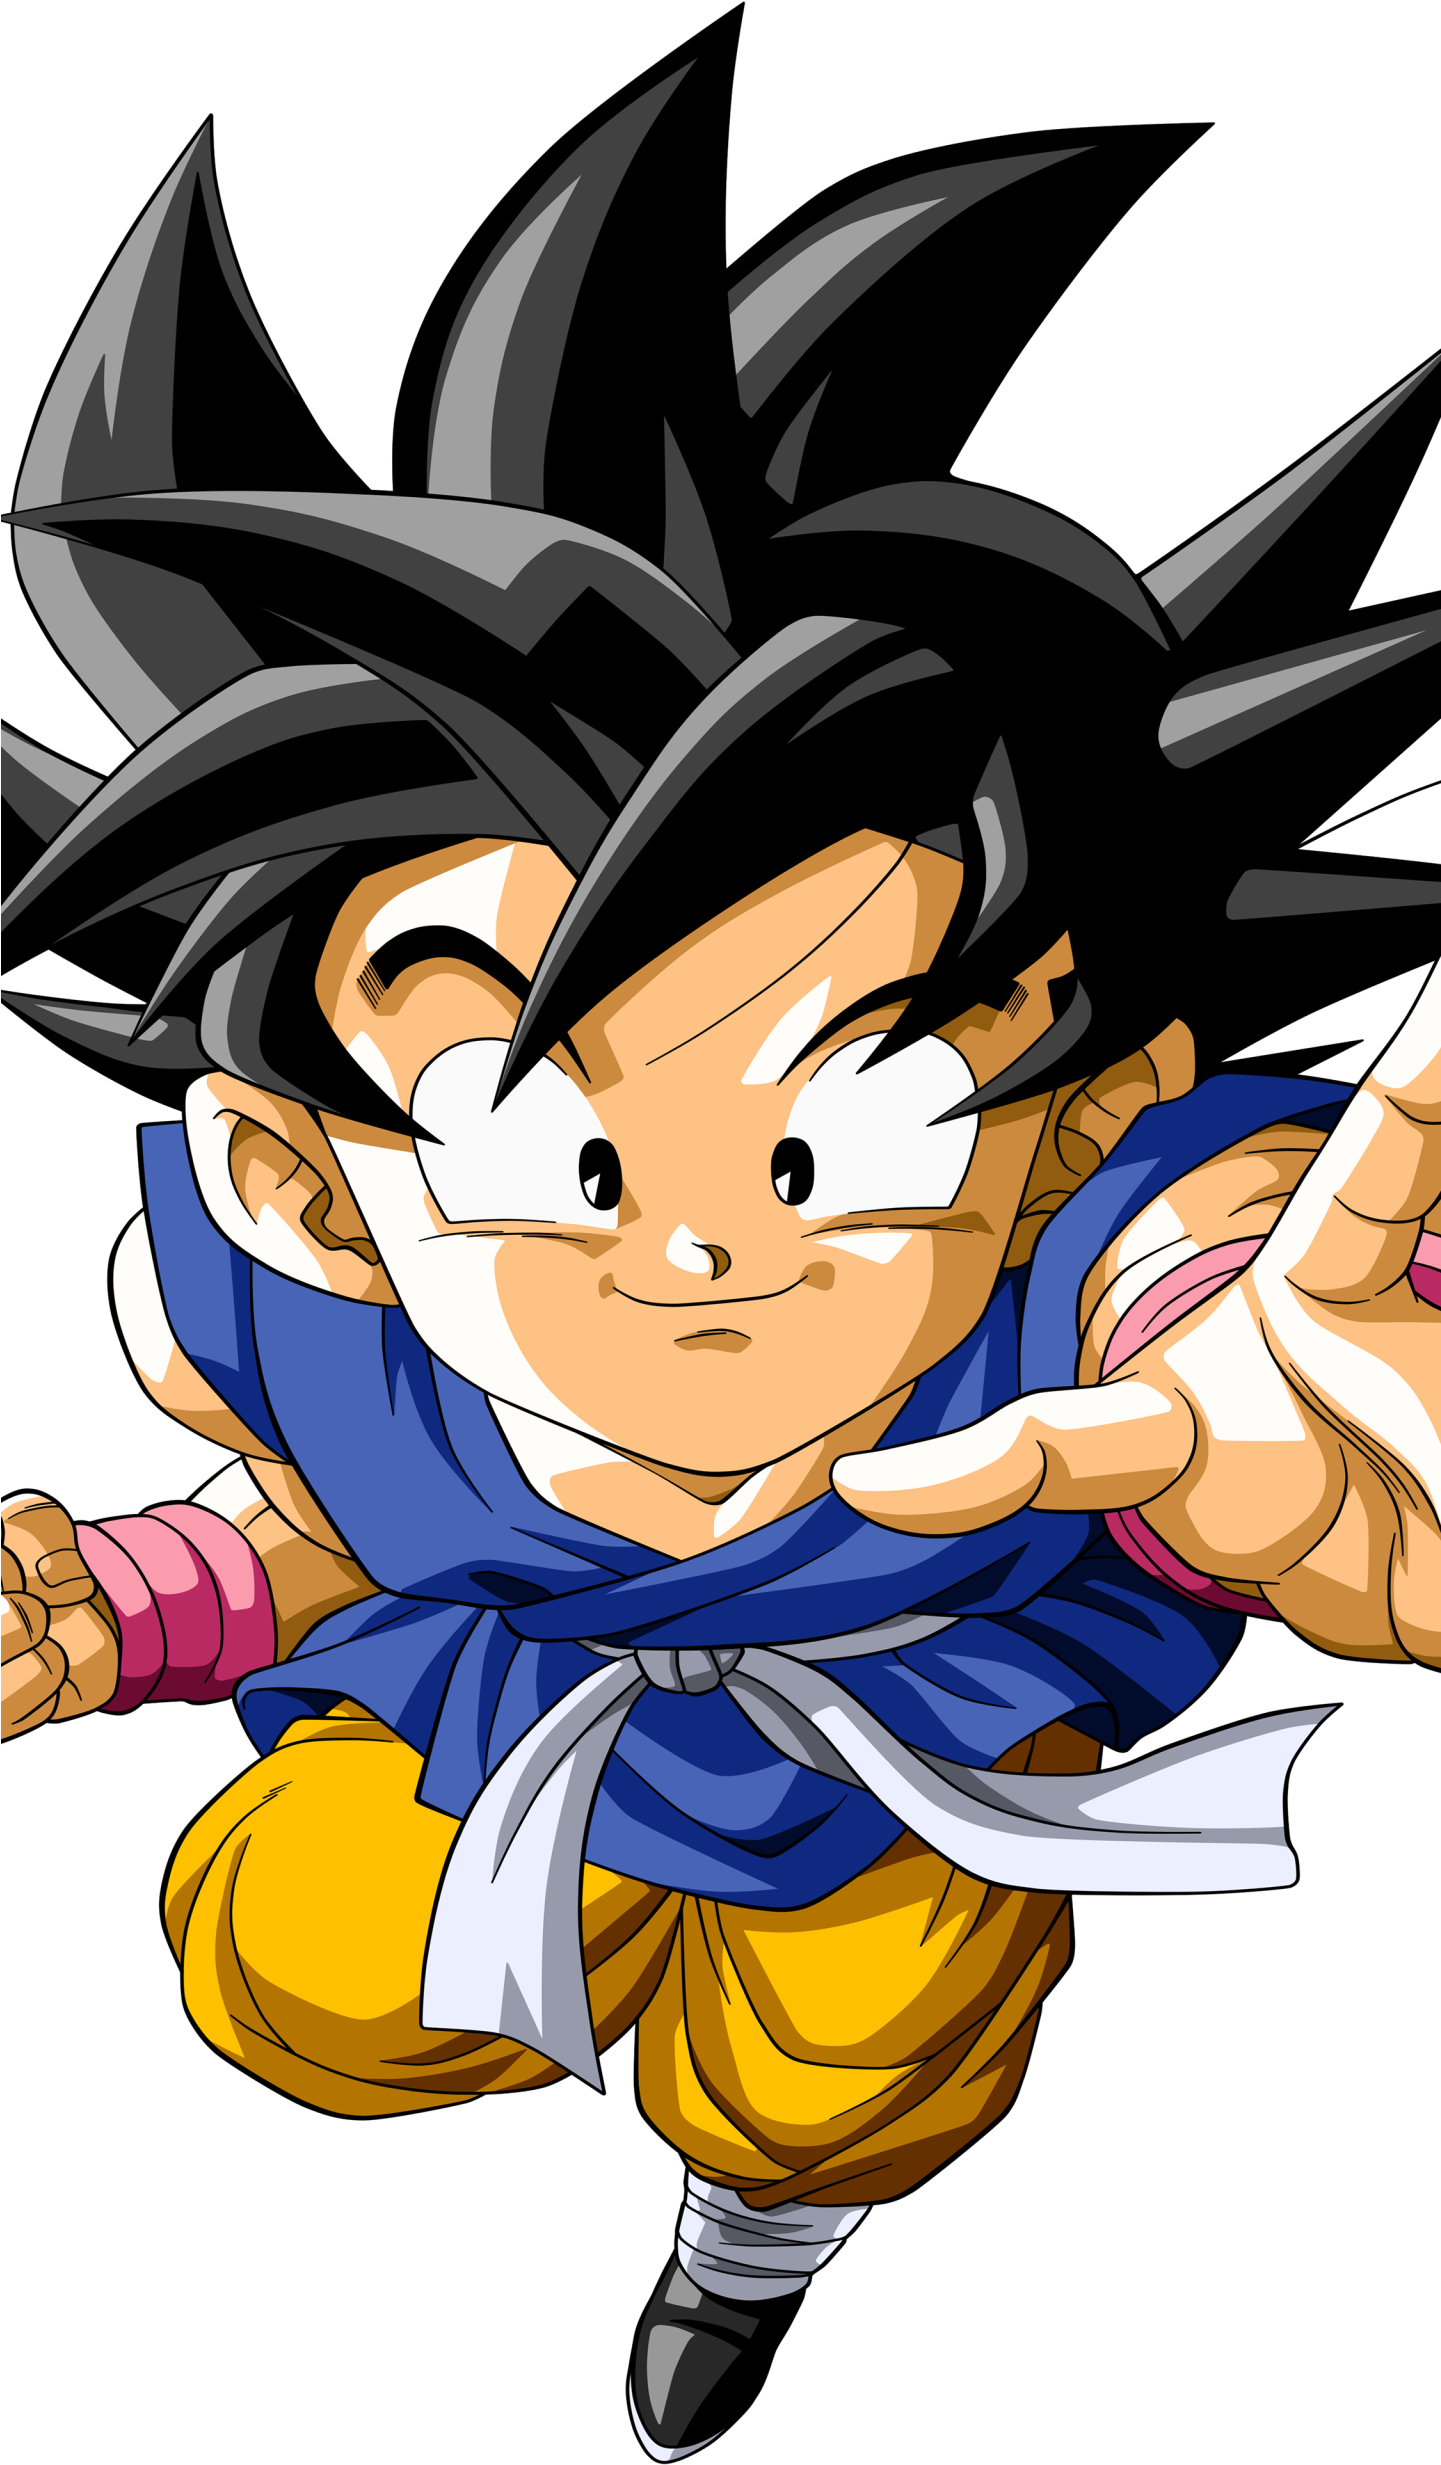 Download HD Kid Goku Anime / Dragon Ball Gt Mobile Wallpaper